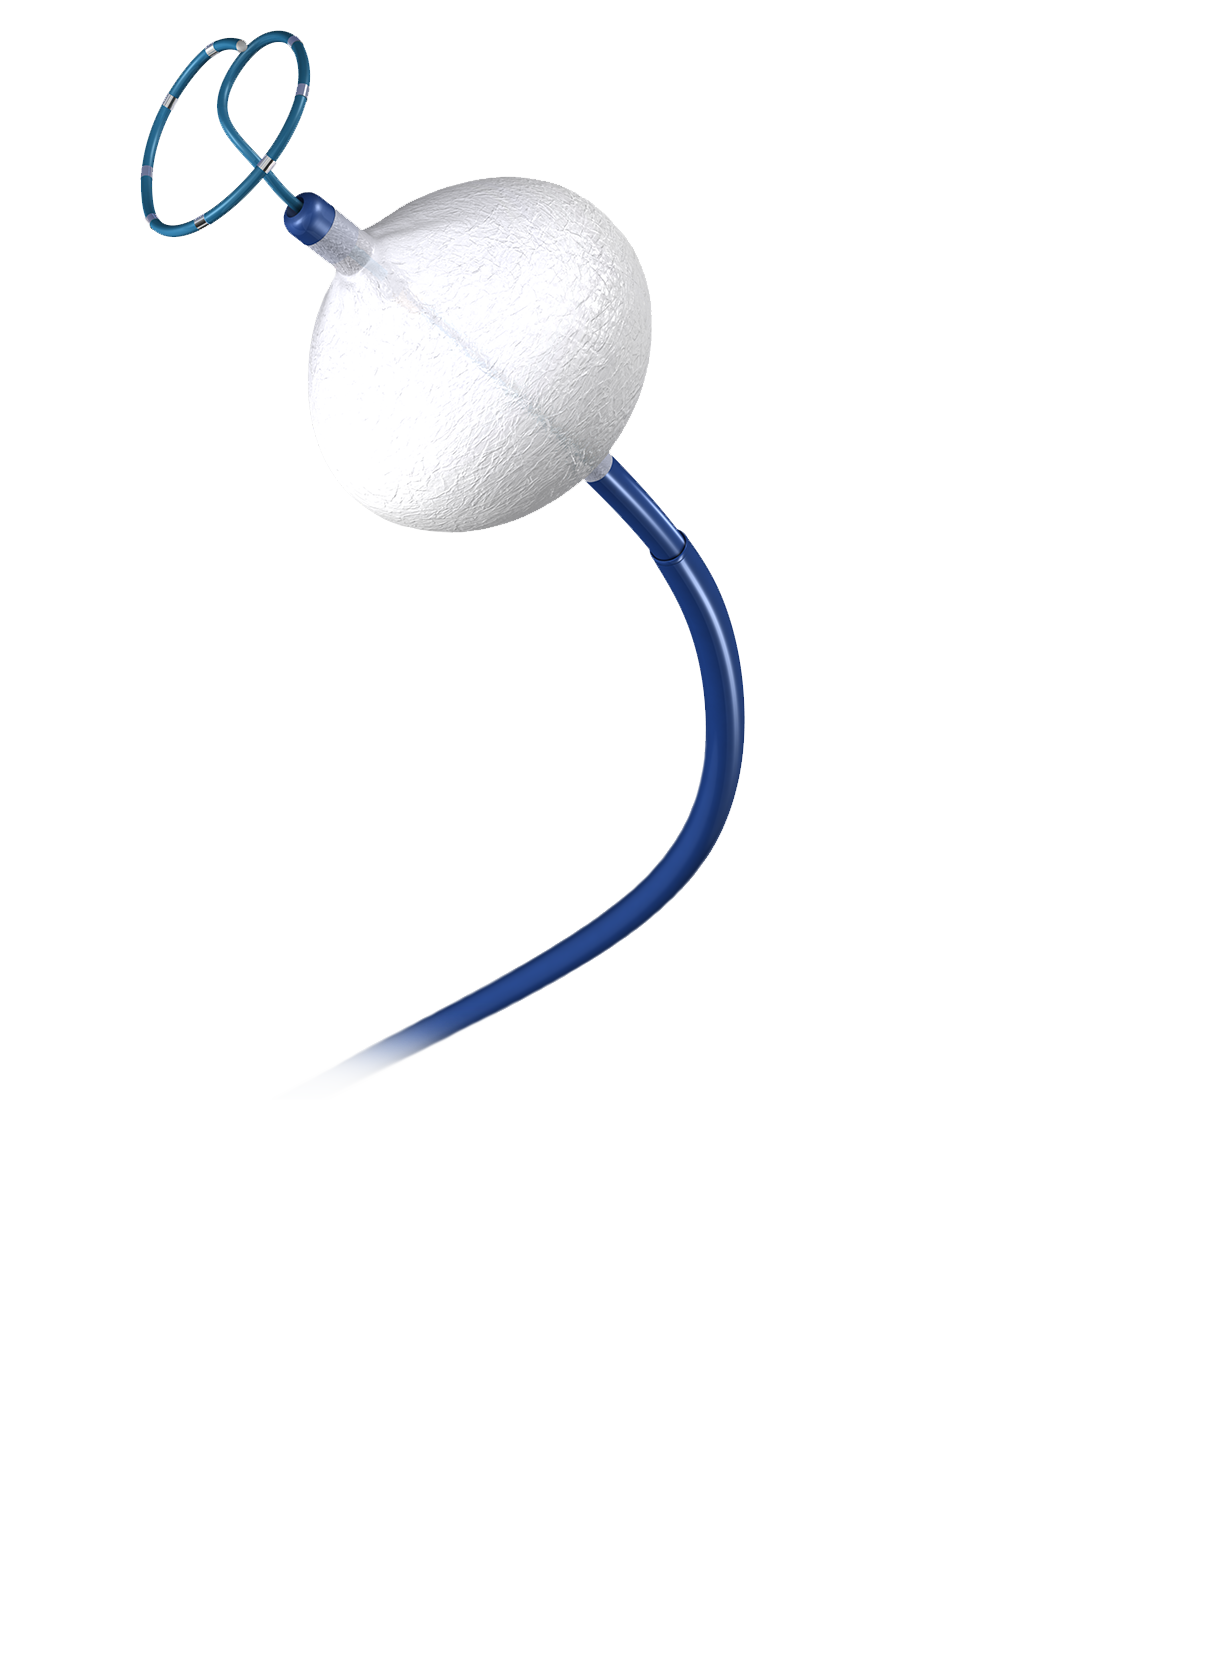 Persistent AF - Medtronic